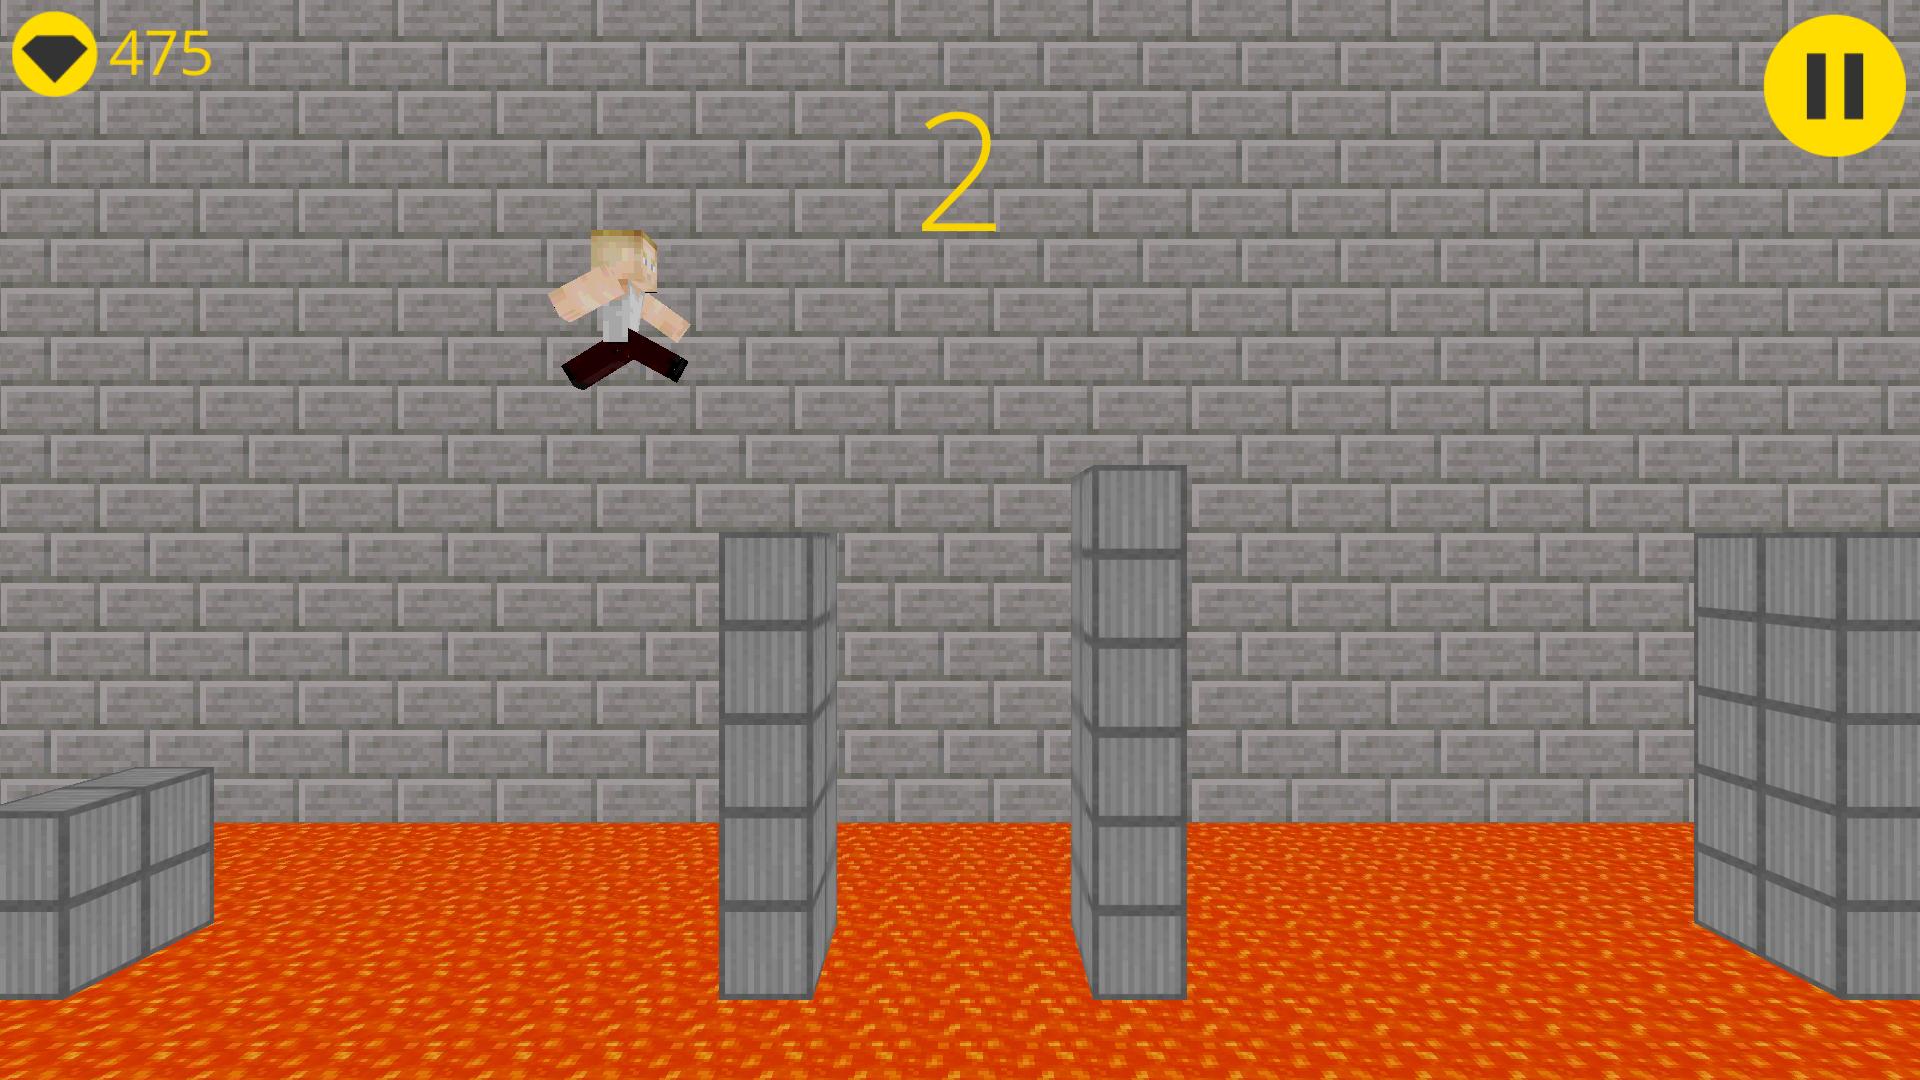 Игры в которых нужно прыгать. Игра куб крафт 3д. Игра куб прыгает башня. Кликеры про прыганье под куб. Игра куб прыгает по стенам поднимаясь выше.